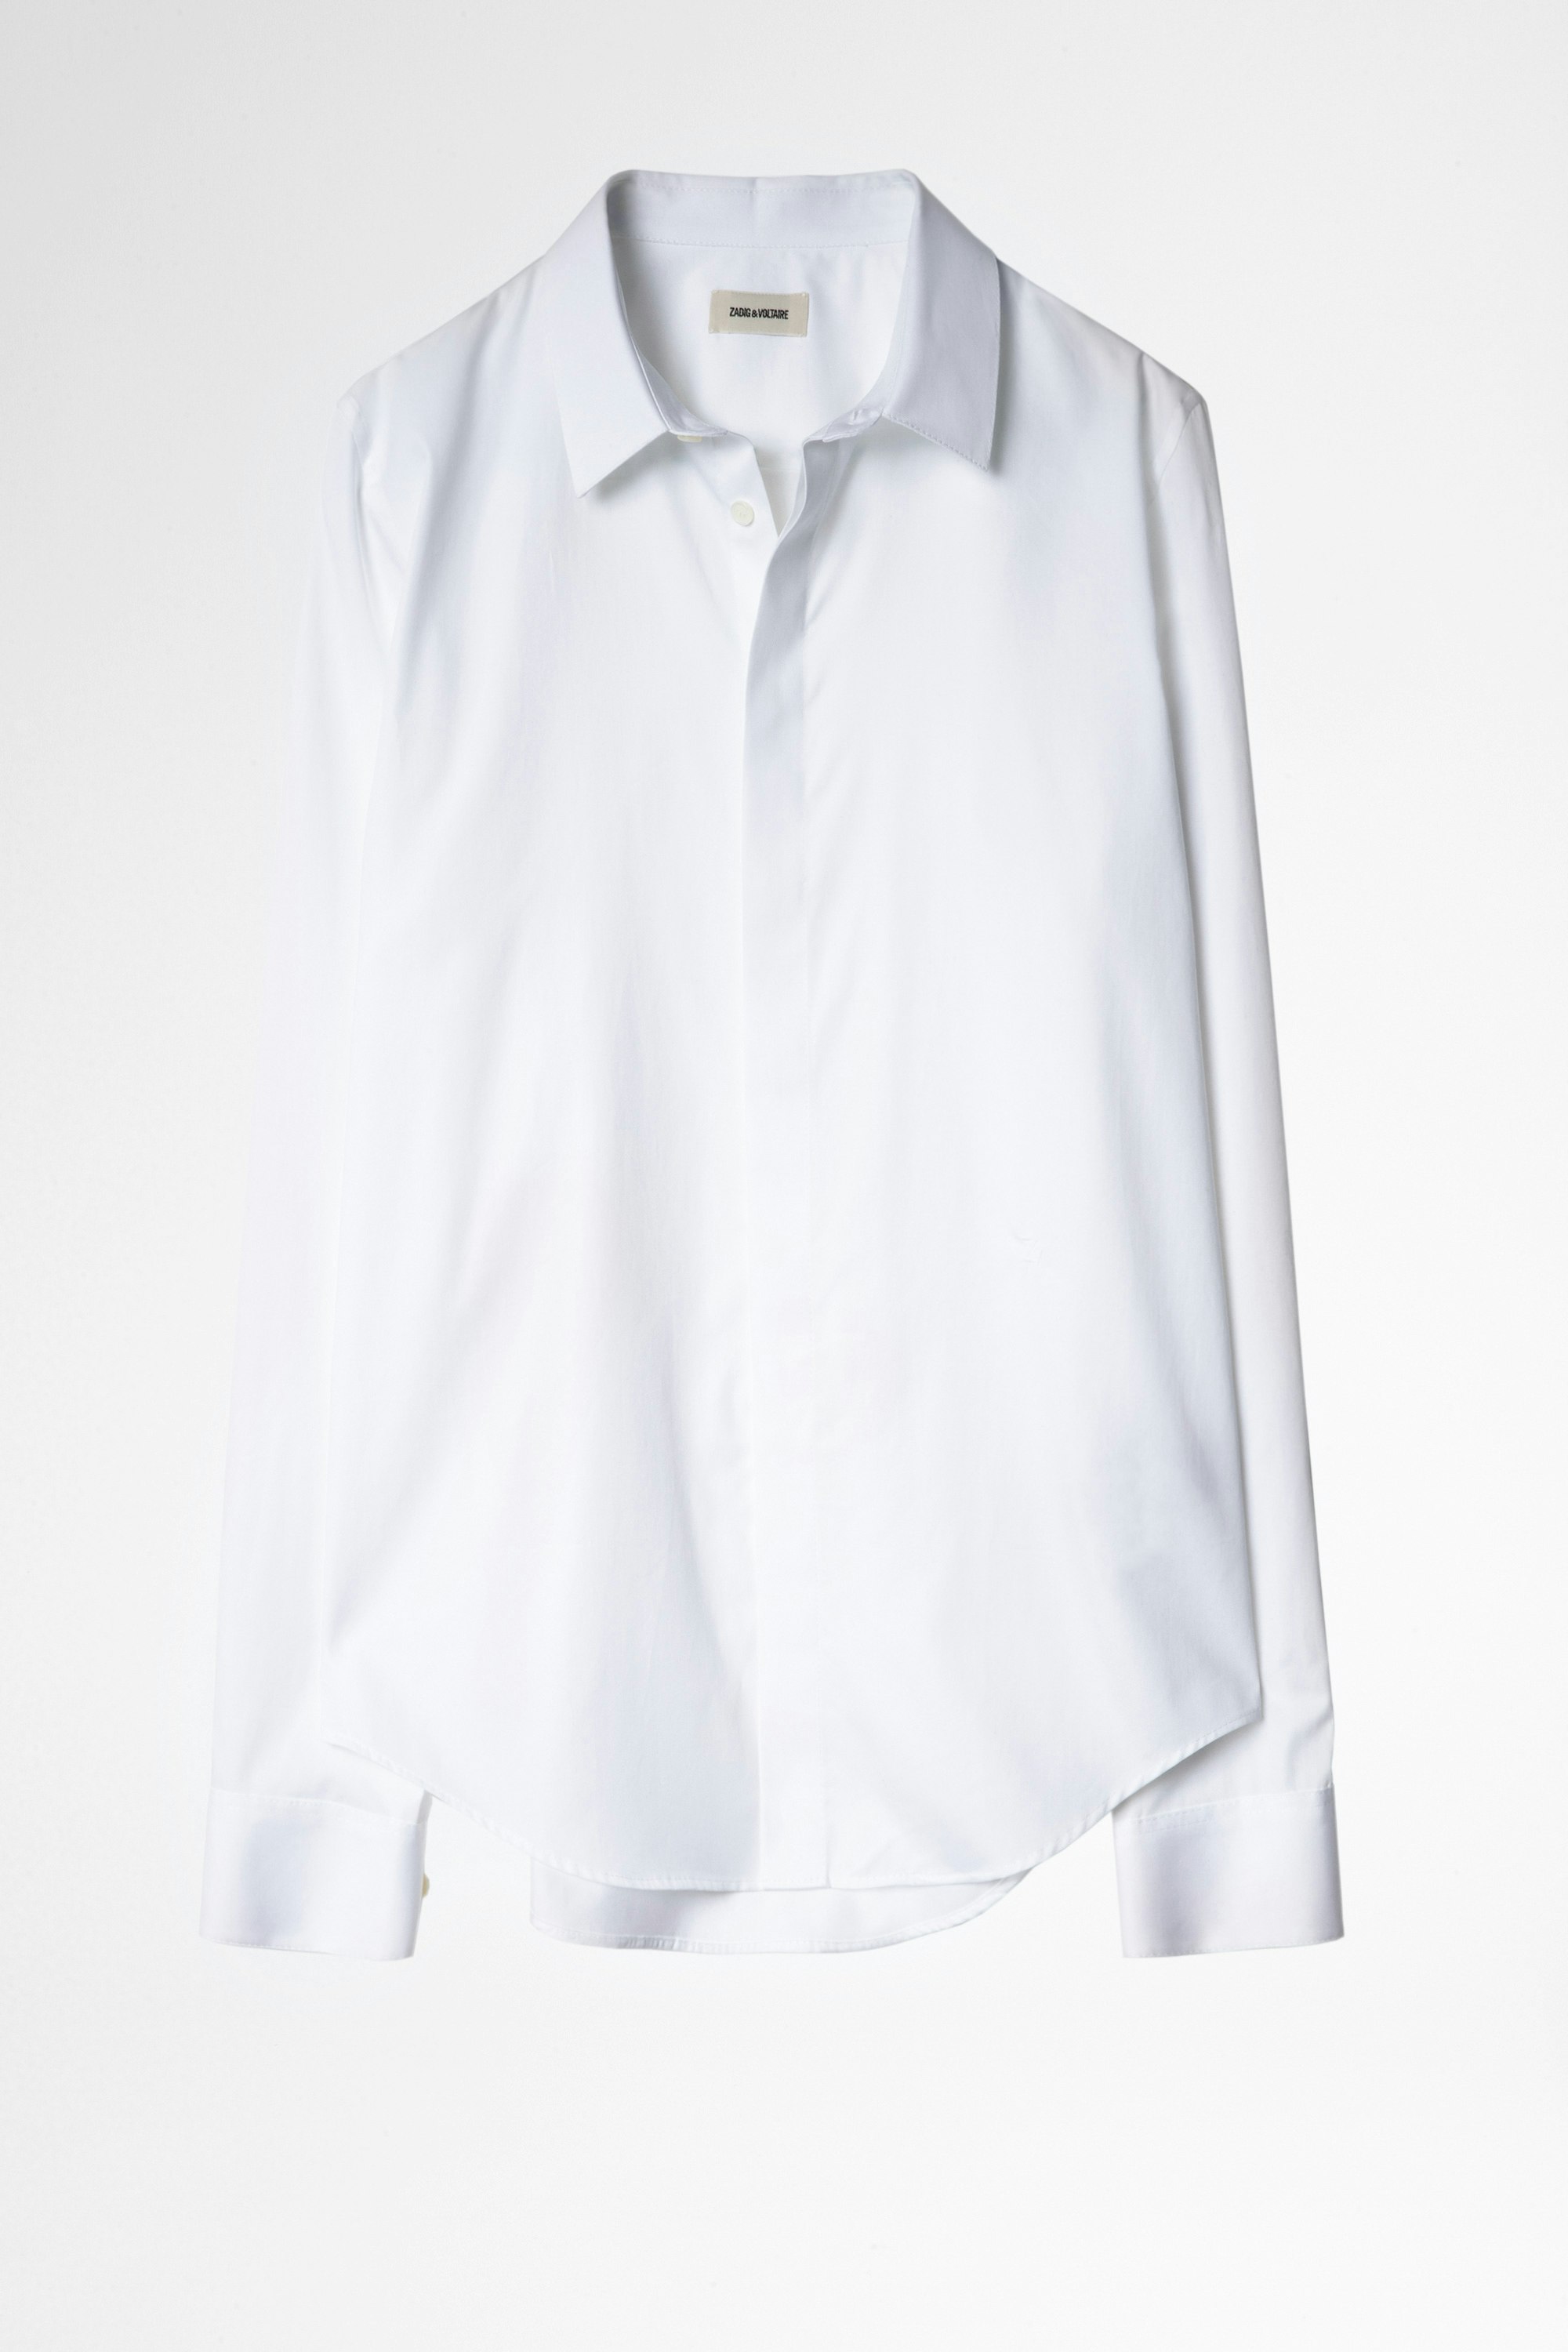 Camicia Sydney Pop Camicia bianca da uomo in cotone ricamato